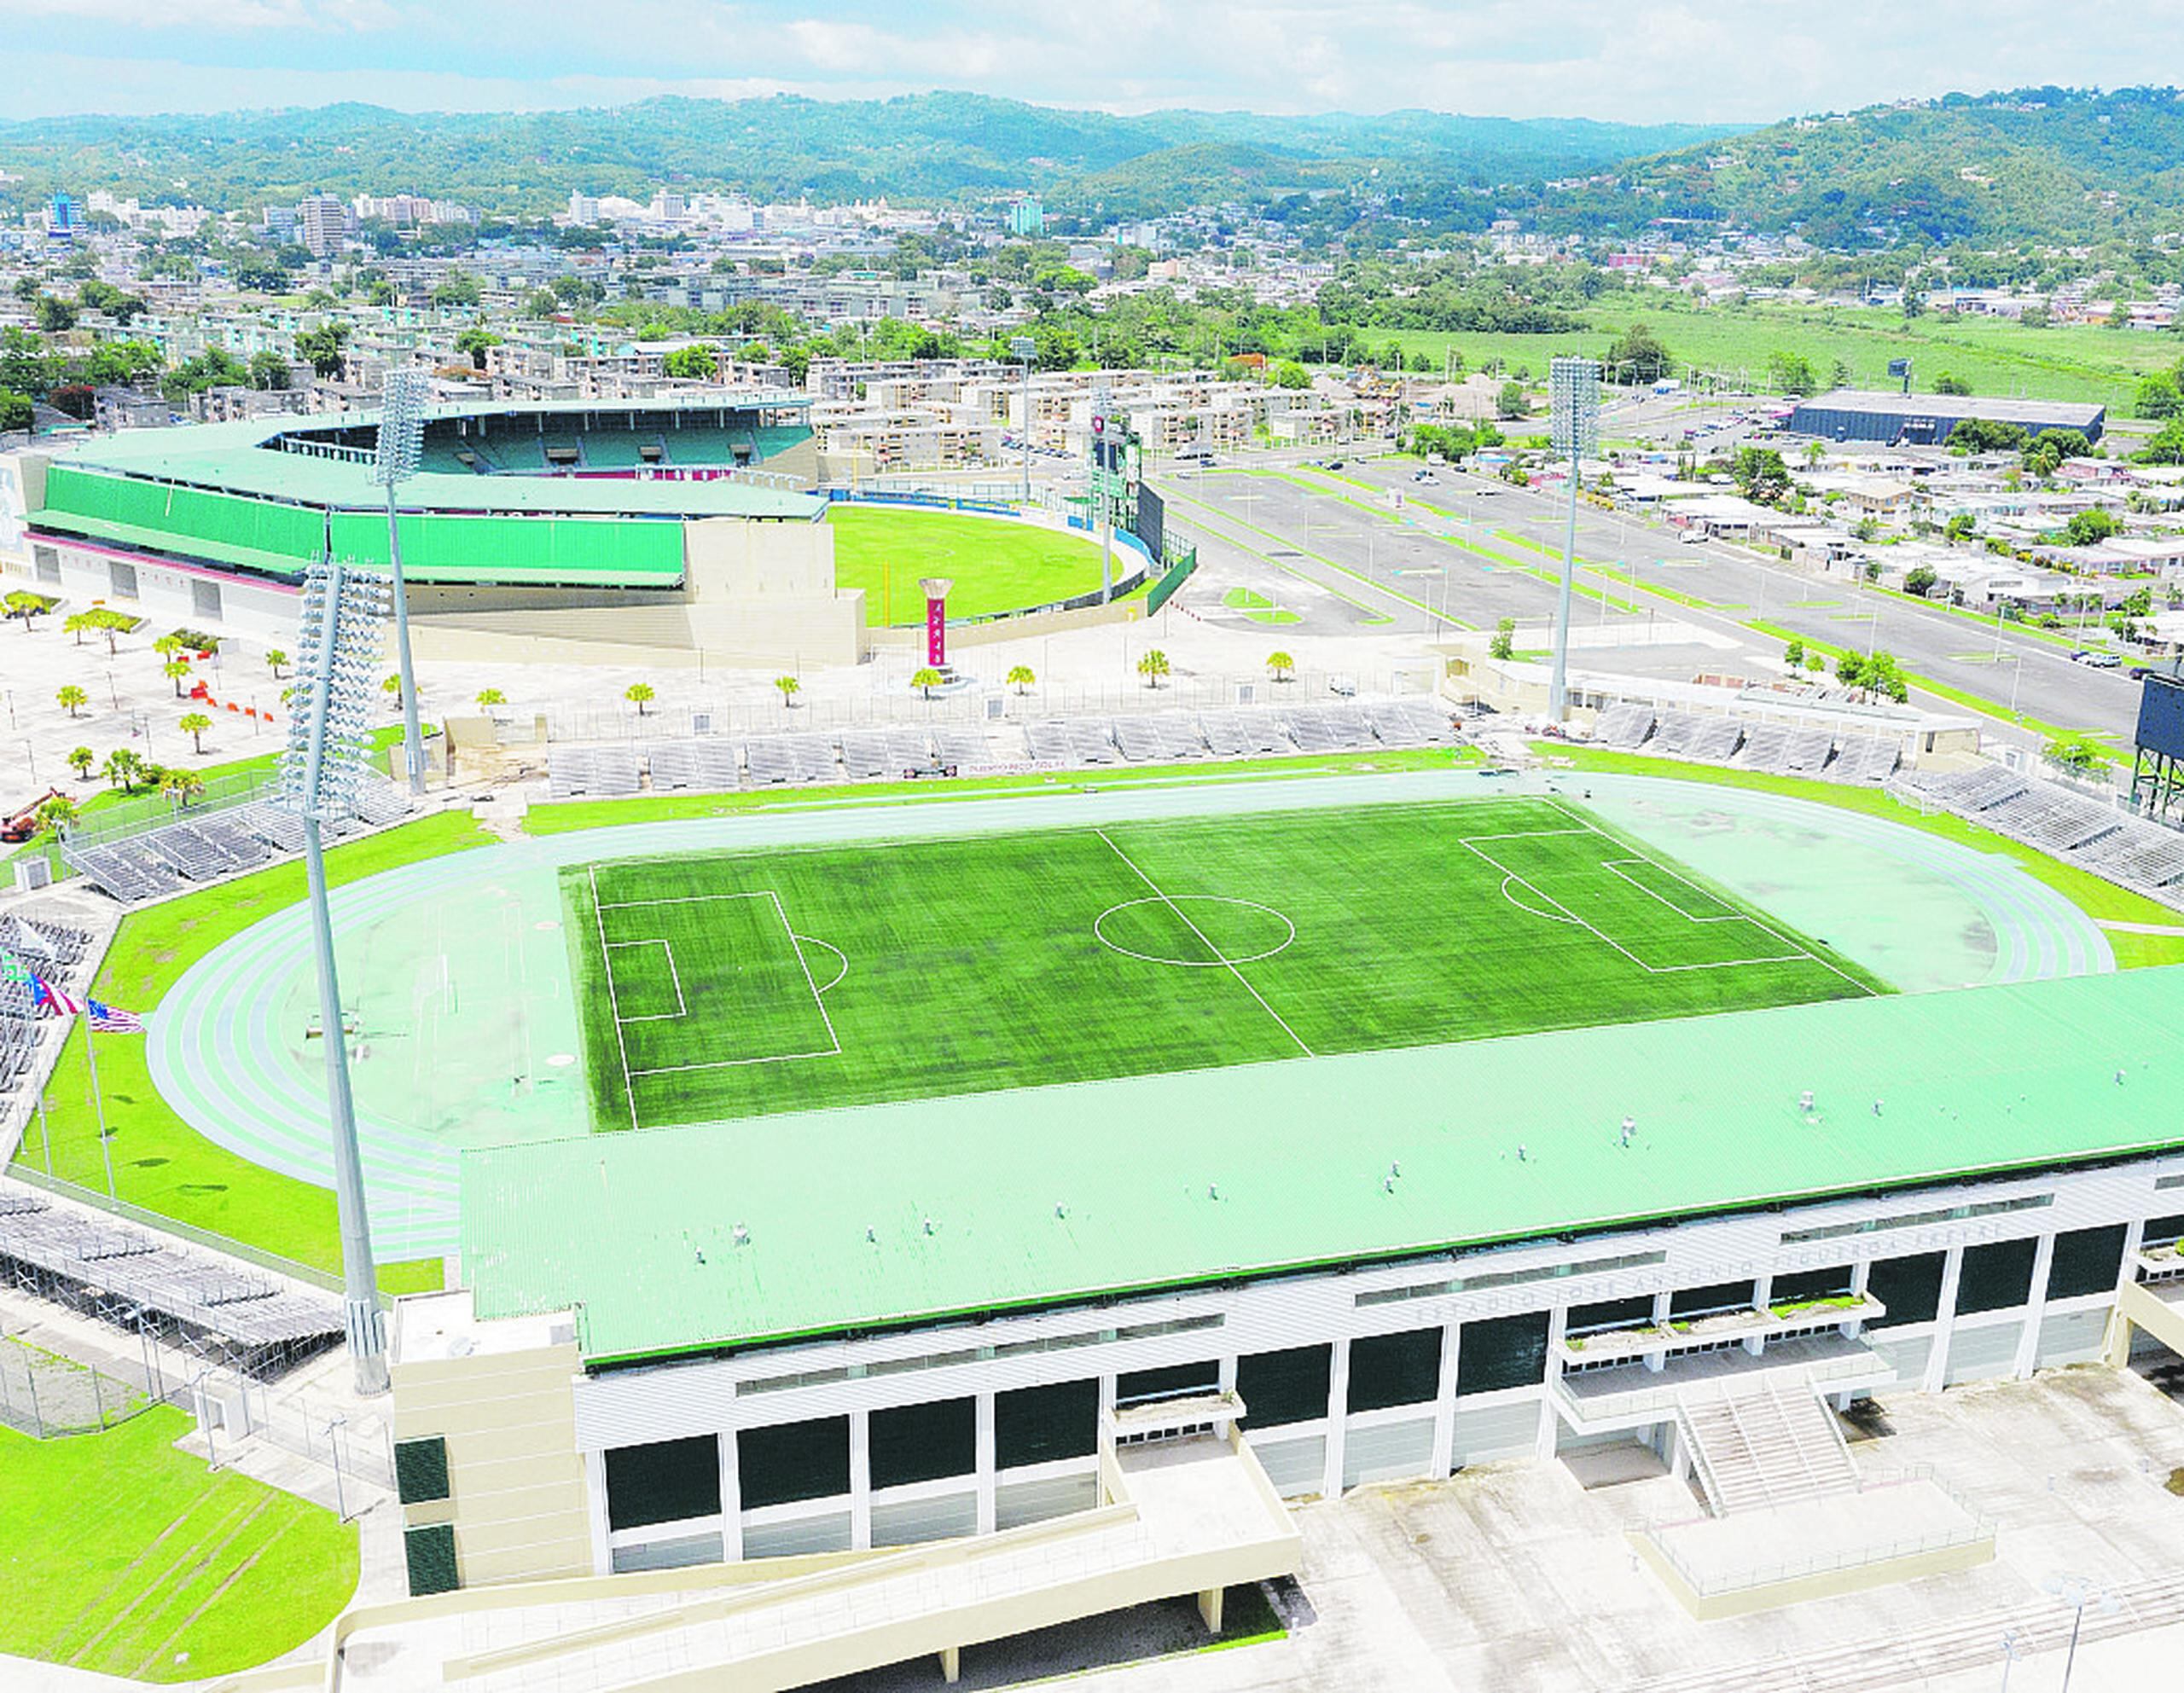 La pista olímpica, cancha de fútbol y el parque de pelota de Mayagüez construidos para los Juegos del 2010 están entre los espacios que inspeccionará Centro Caribe Sports en su visita de la semana próxima.